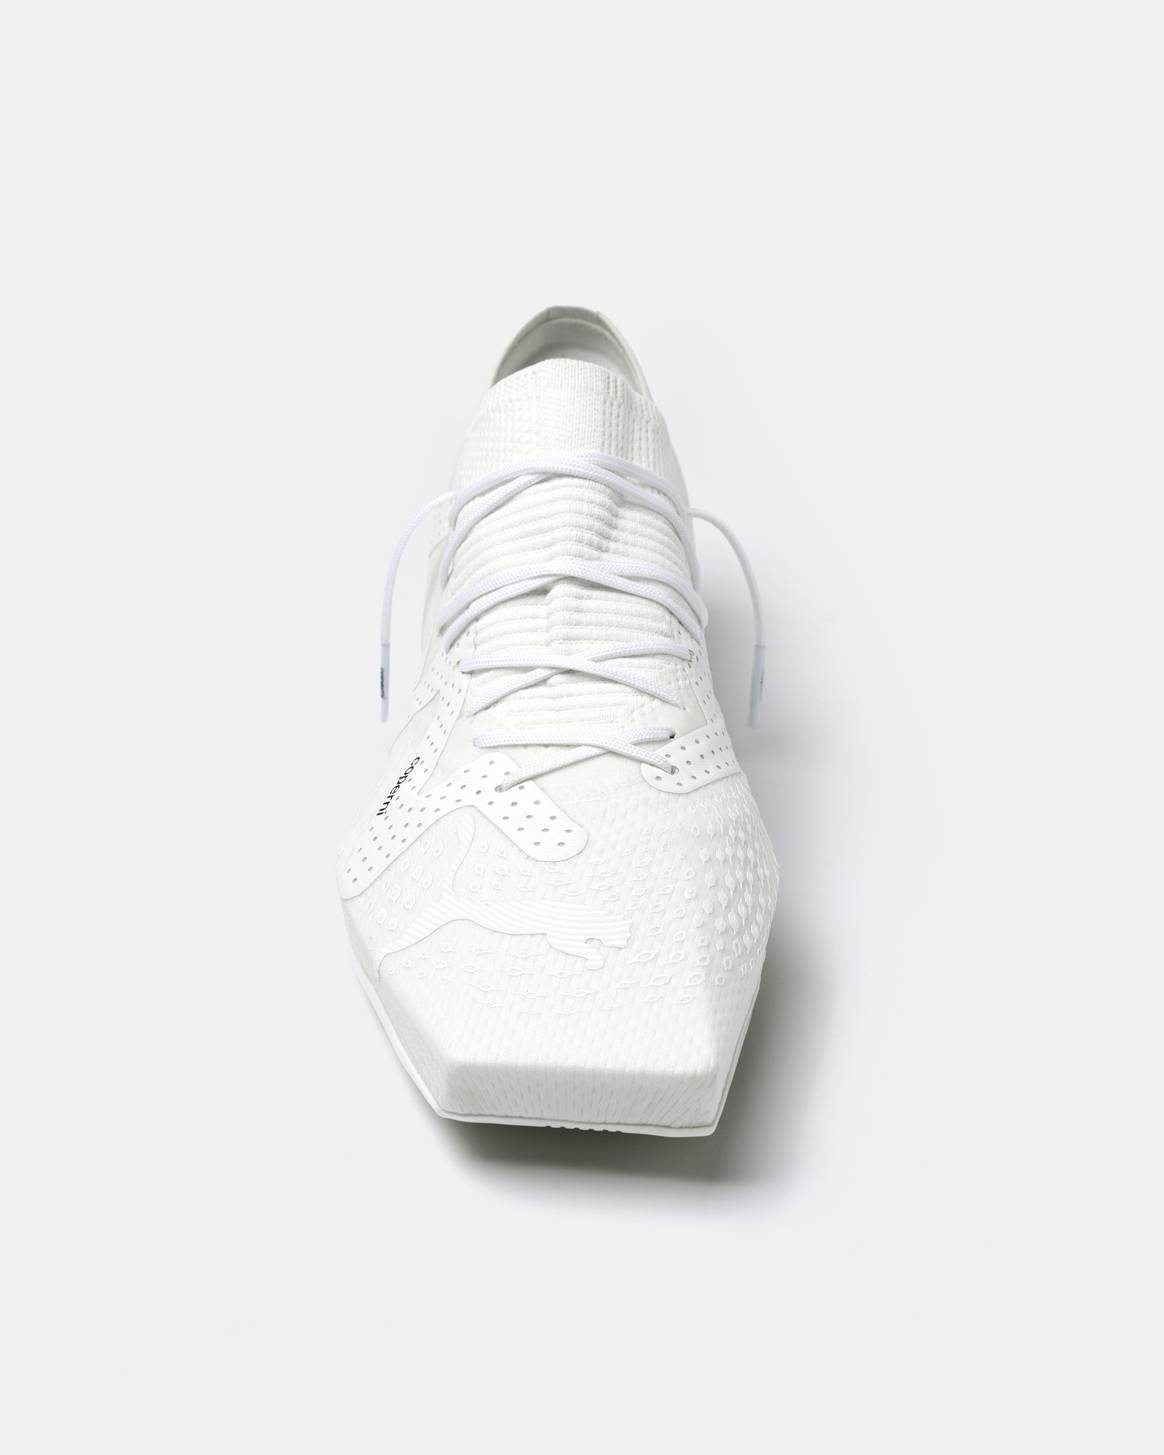 Puma X Coperni sneaker in white